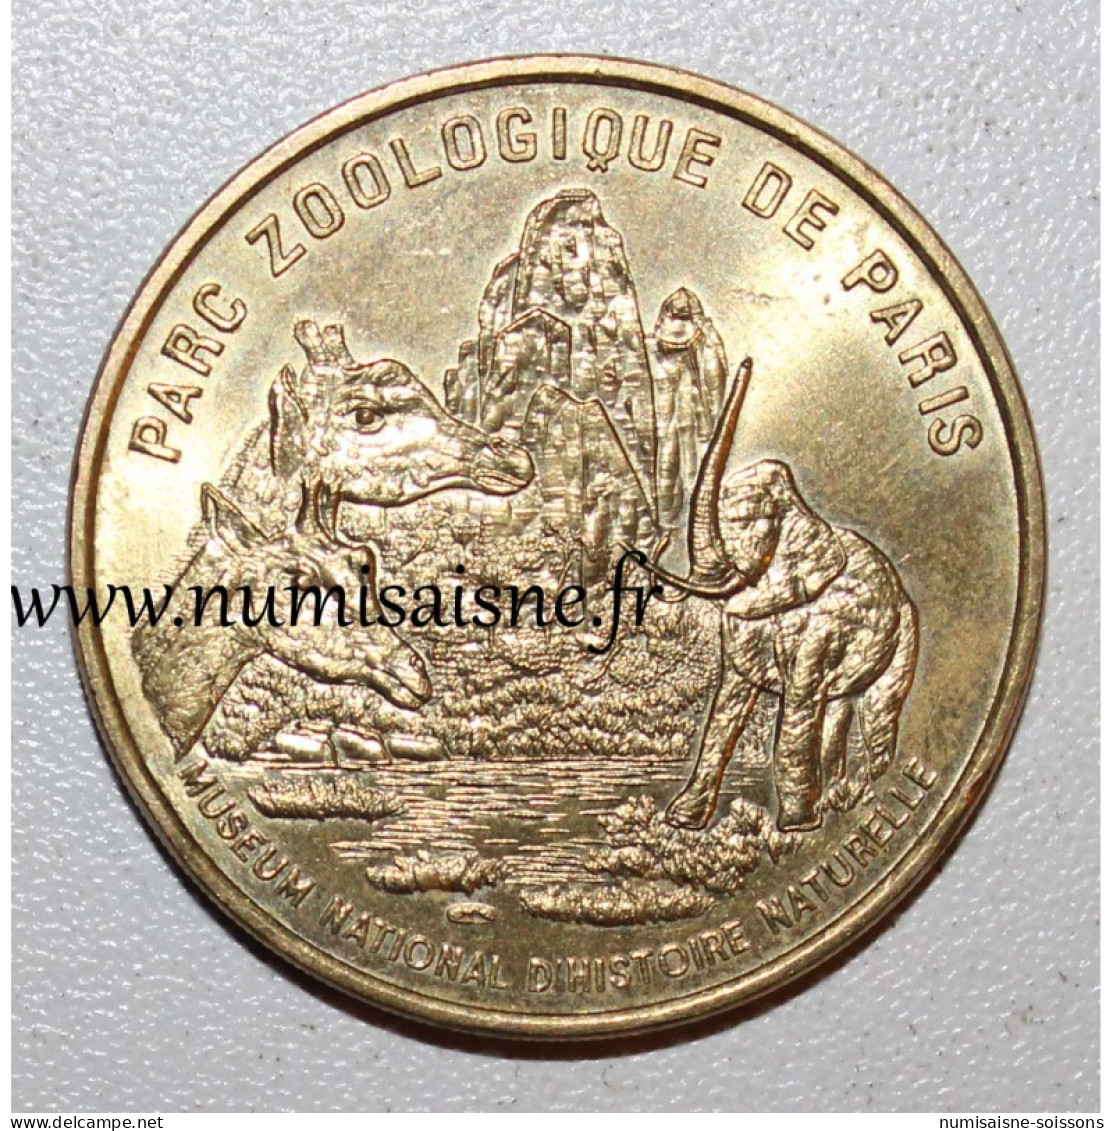 75 - PARIS - PARC ZOOLOGIQUE - Monnaie De Paris - 1998 - TTB/SUP - Non-datés